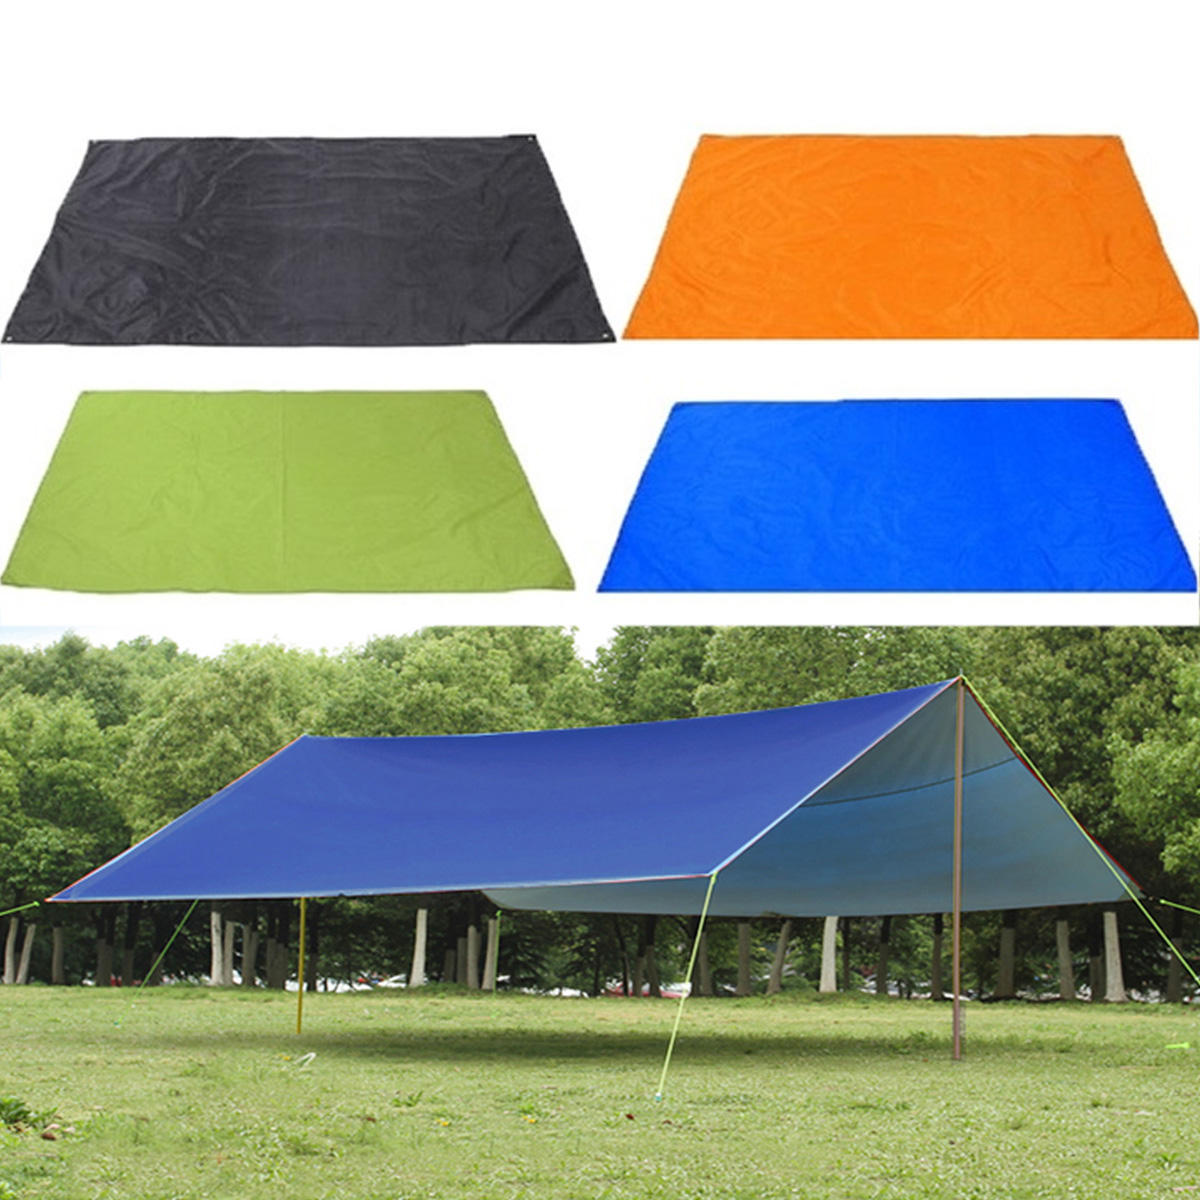 210х150см водонепроницаемый тент для кемпинга на открытом воздухе, навес от солнца и дождя, палатка пикникового коврика